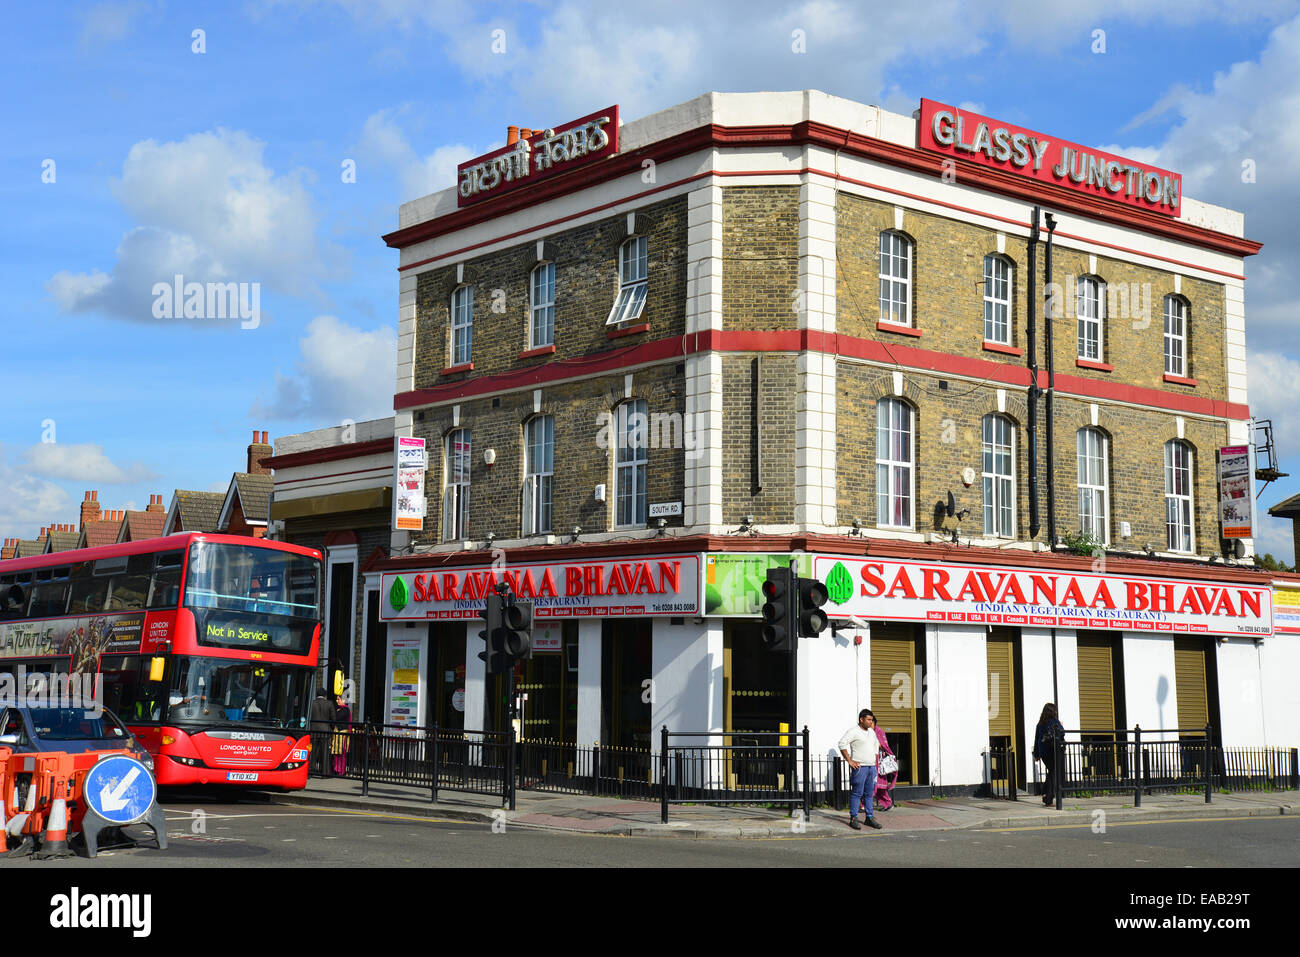 La giunzione vetroso edificio, South Street, Southall, London Borough of Ealing, Greater London, England, Regno Unito Foto Stock